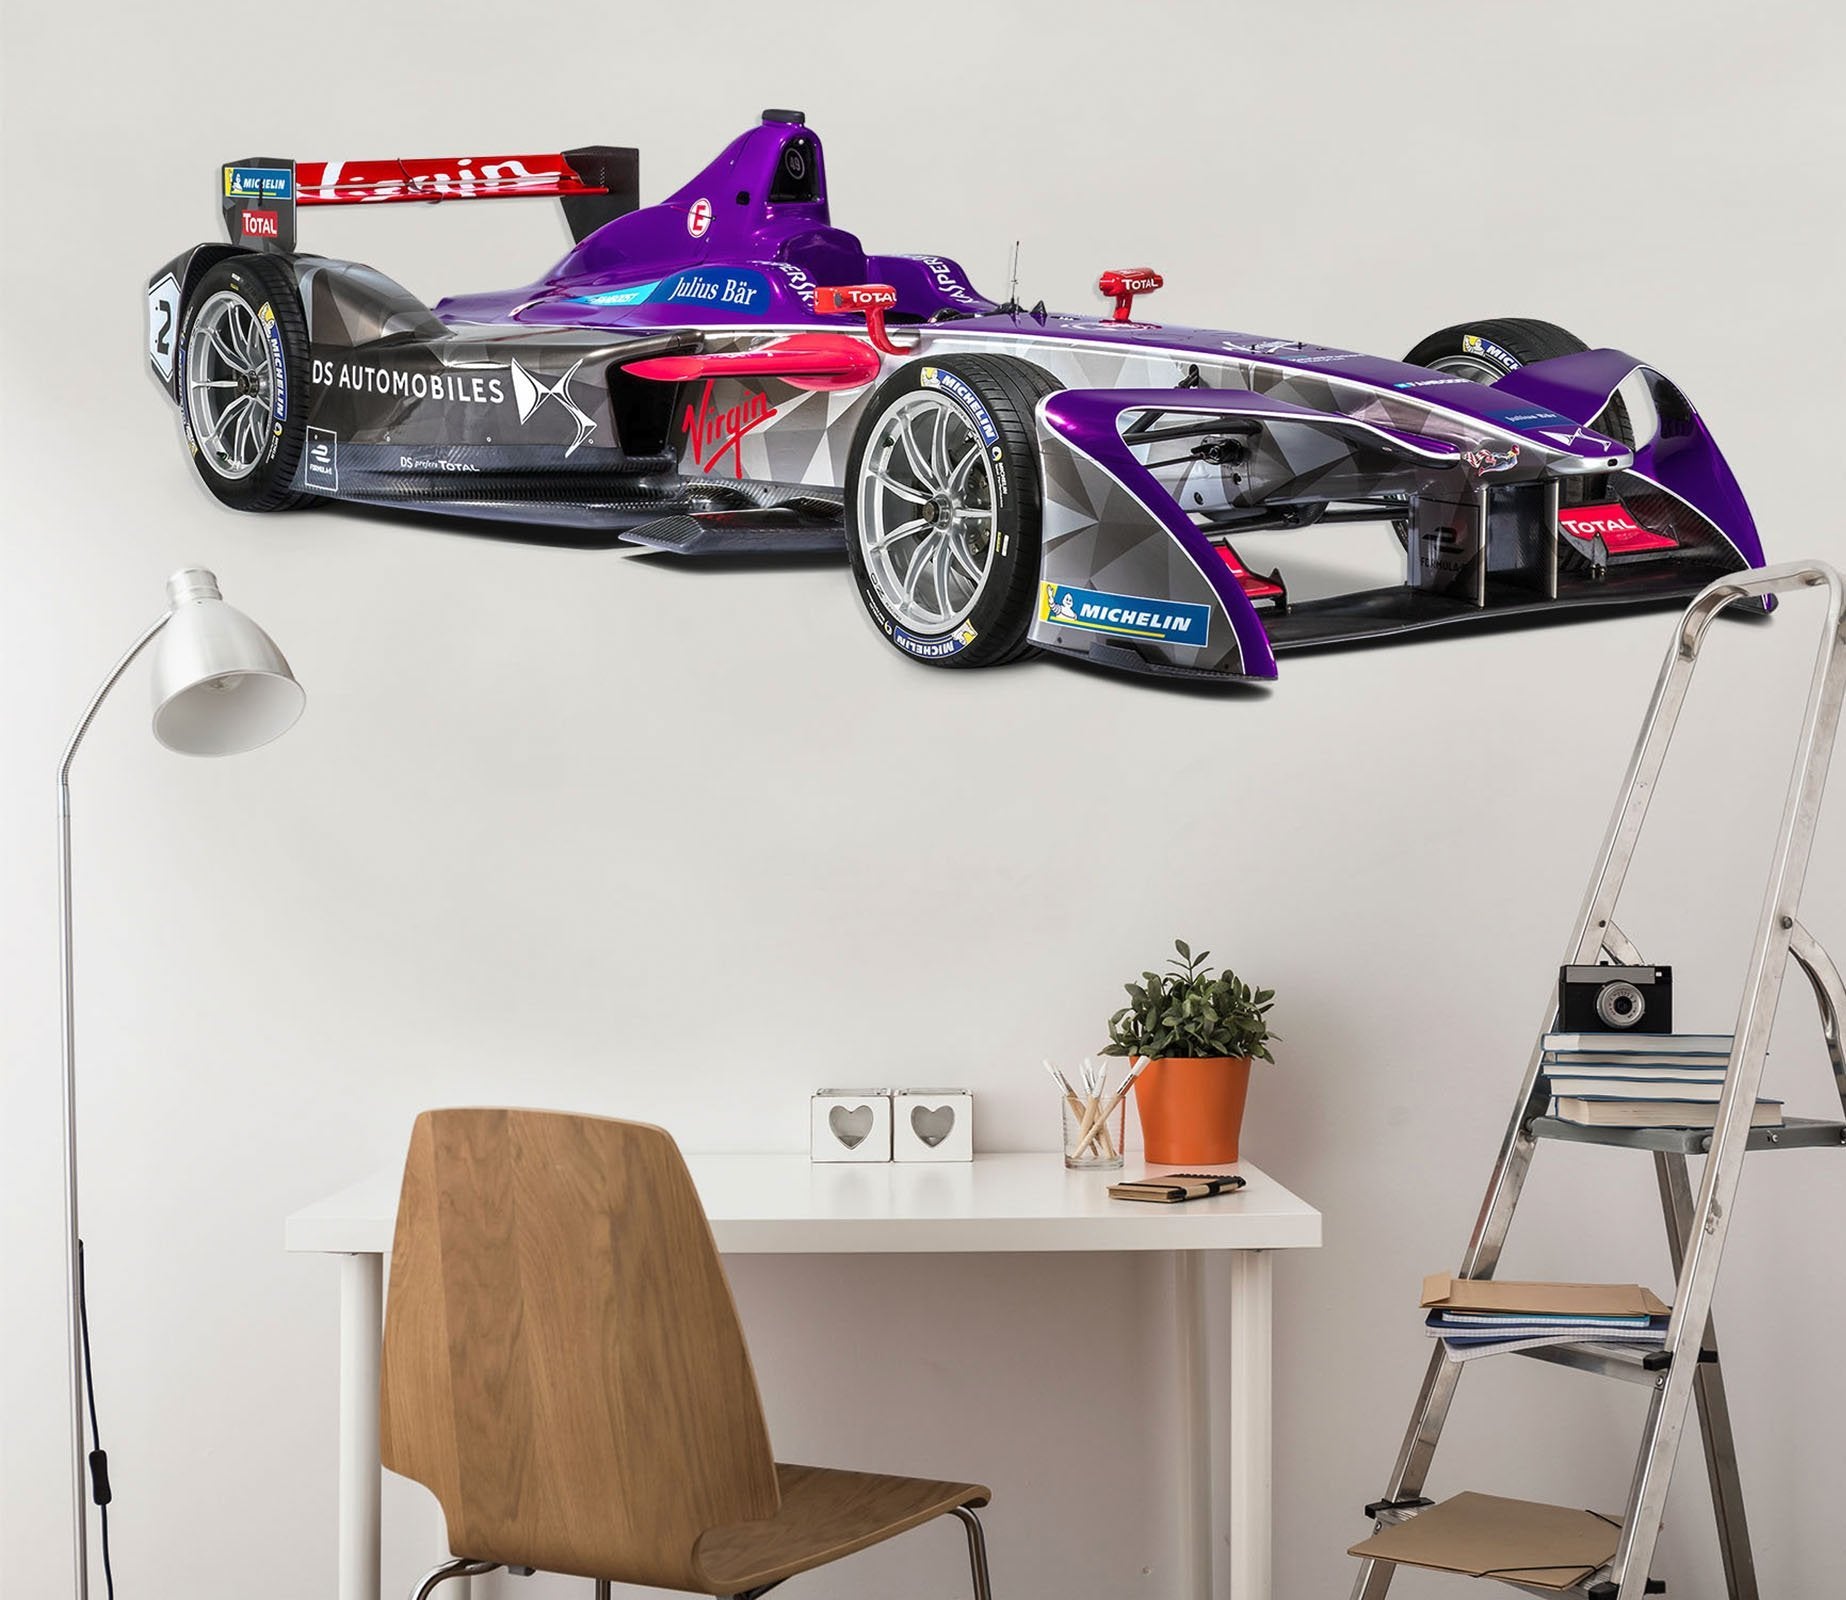 3D Racing Formula 170 Vehicles Wallpaper AJ Wallpaper 